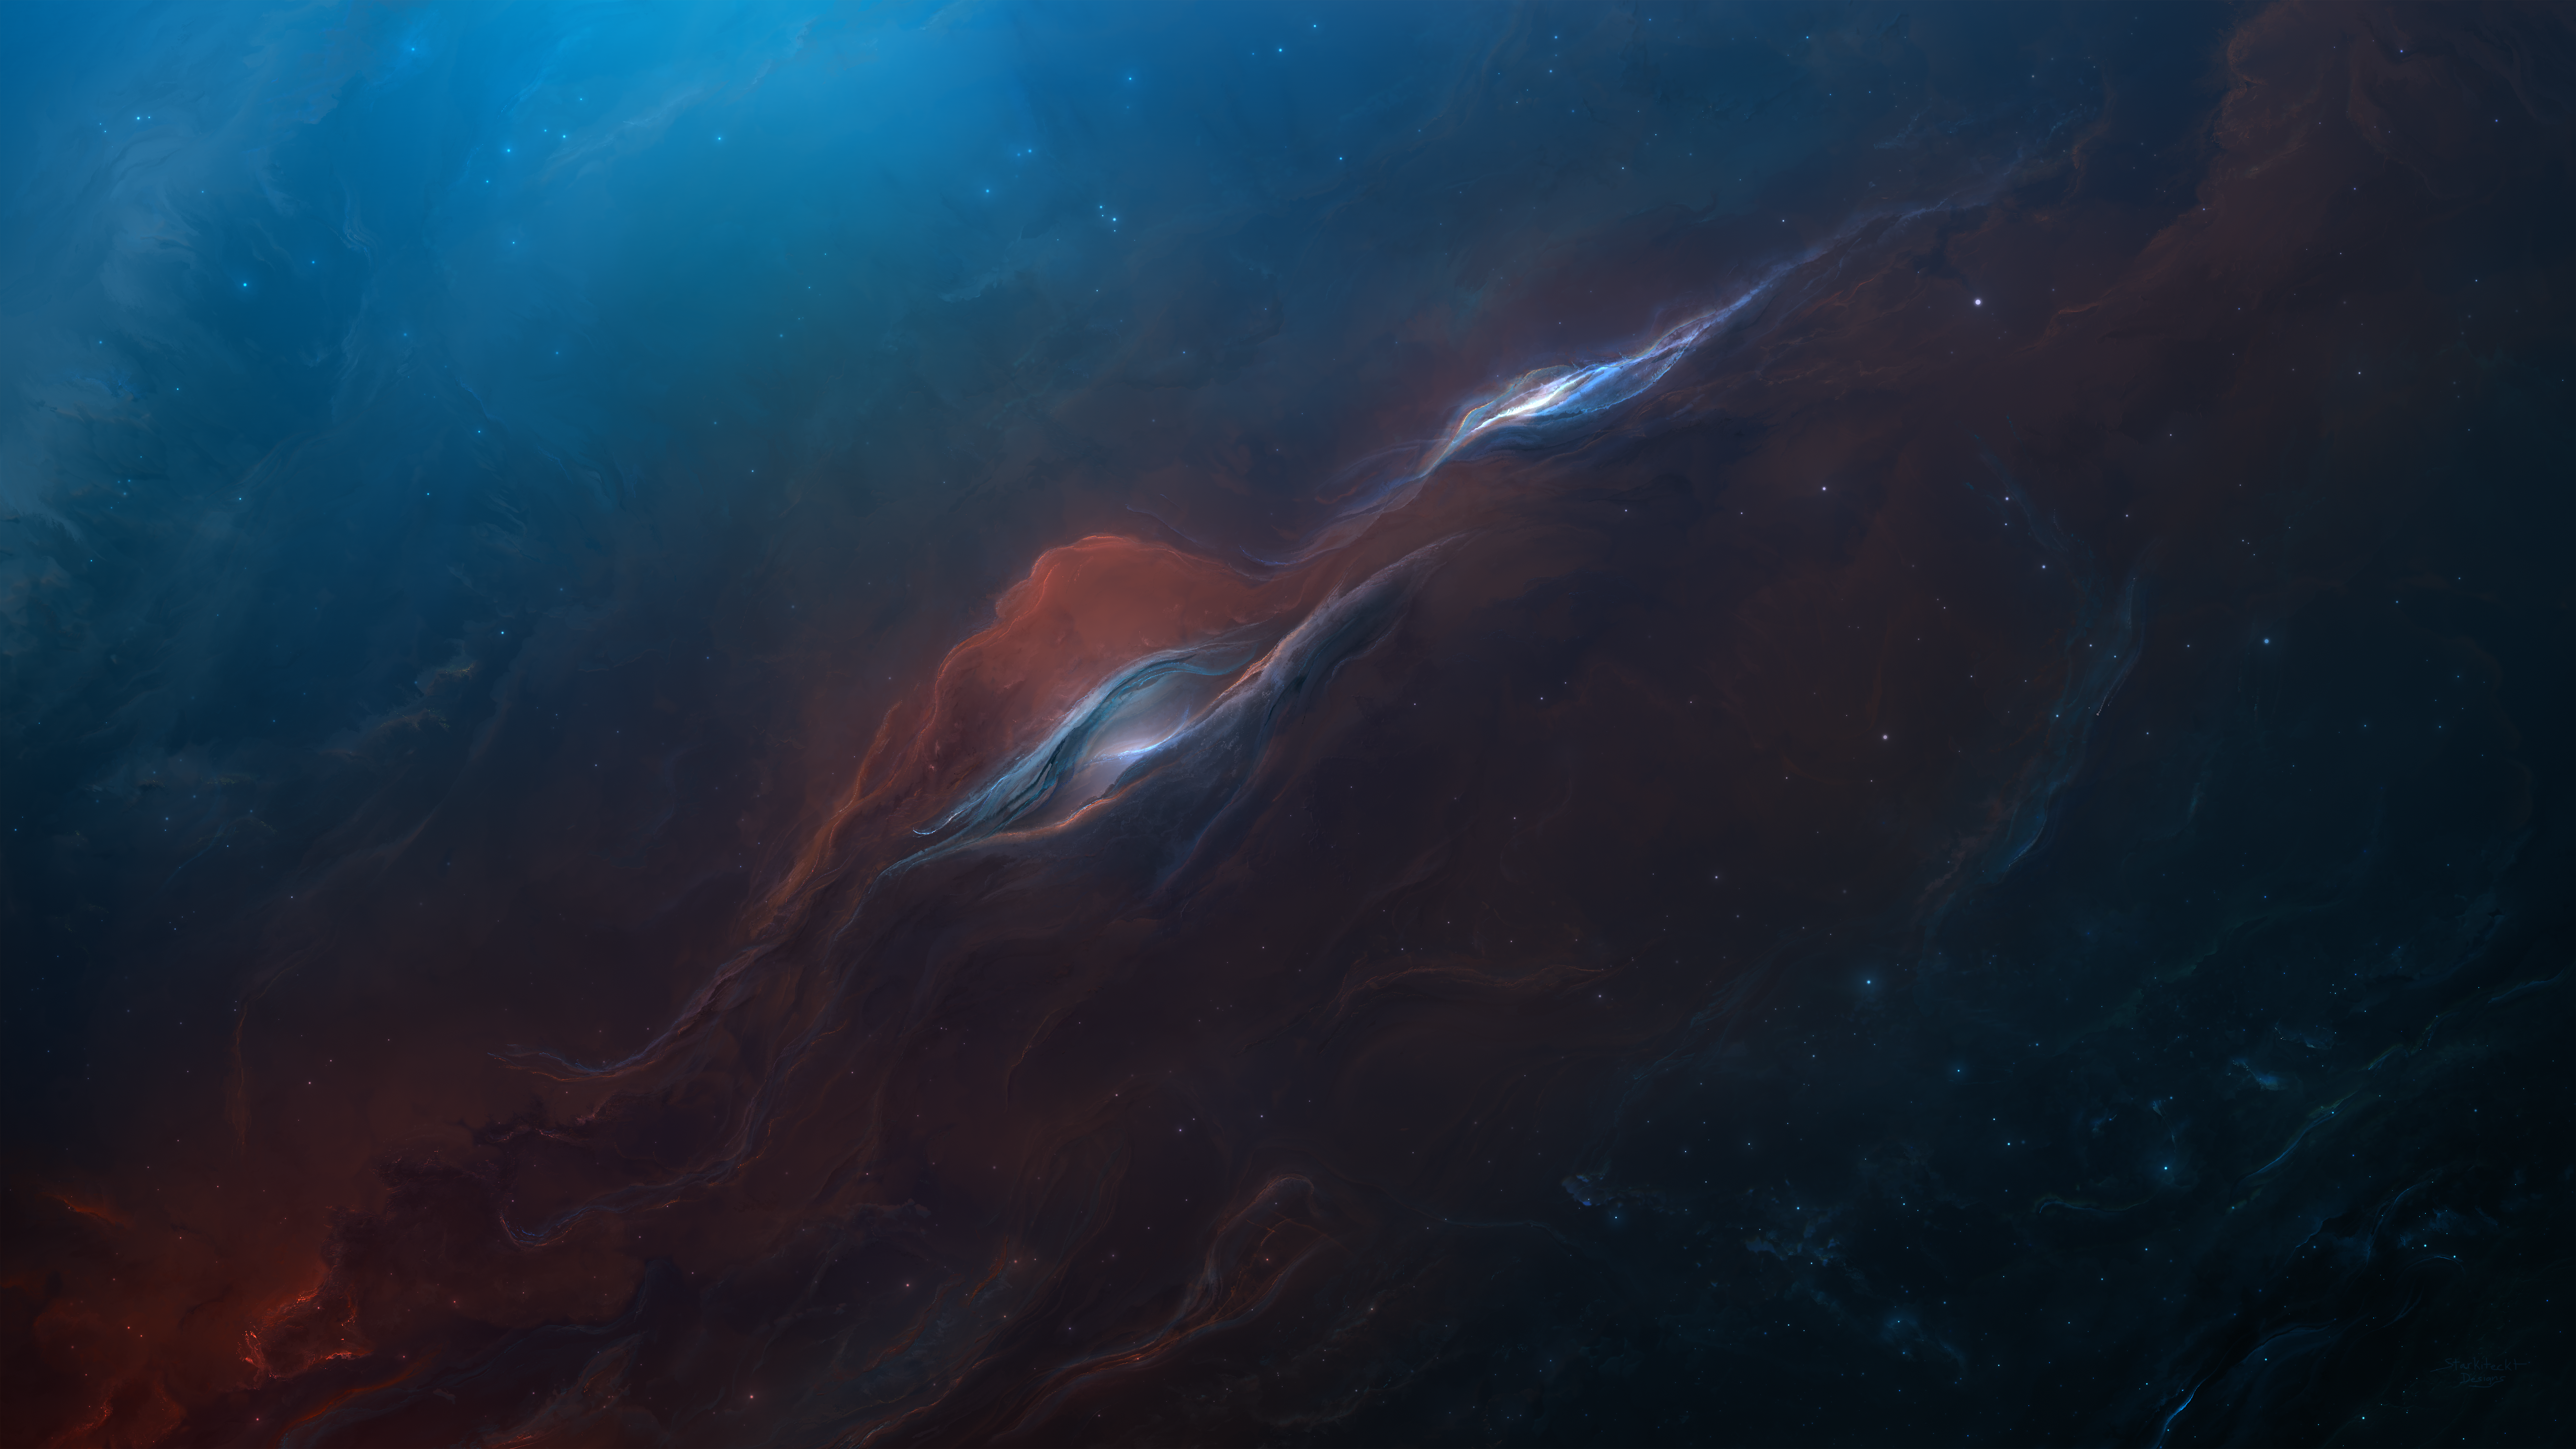 Nebula Starkiteckt Space Galaxy 7500x4219